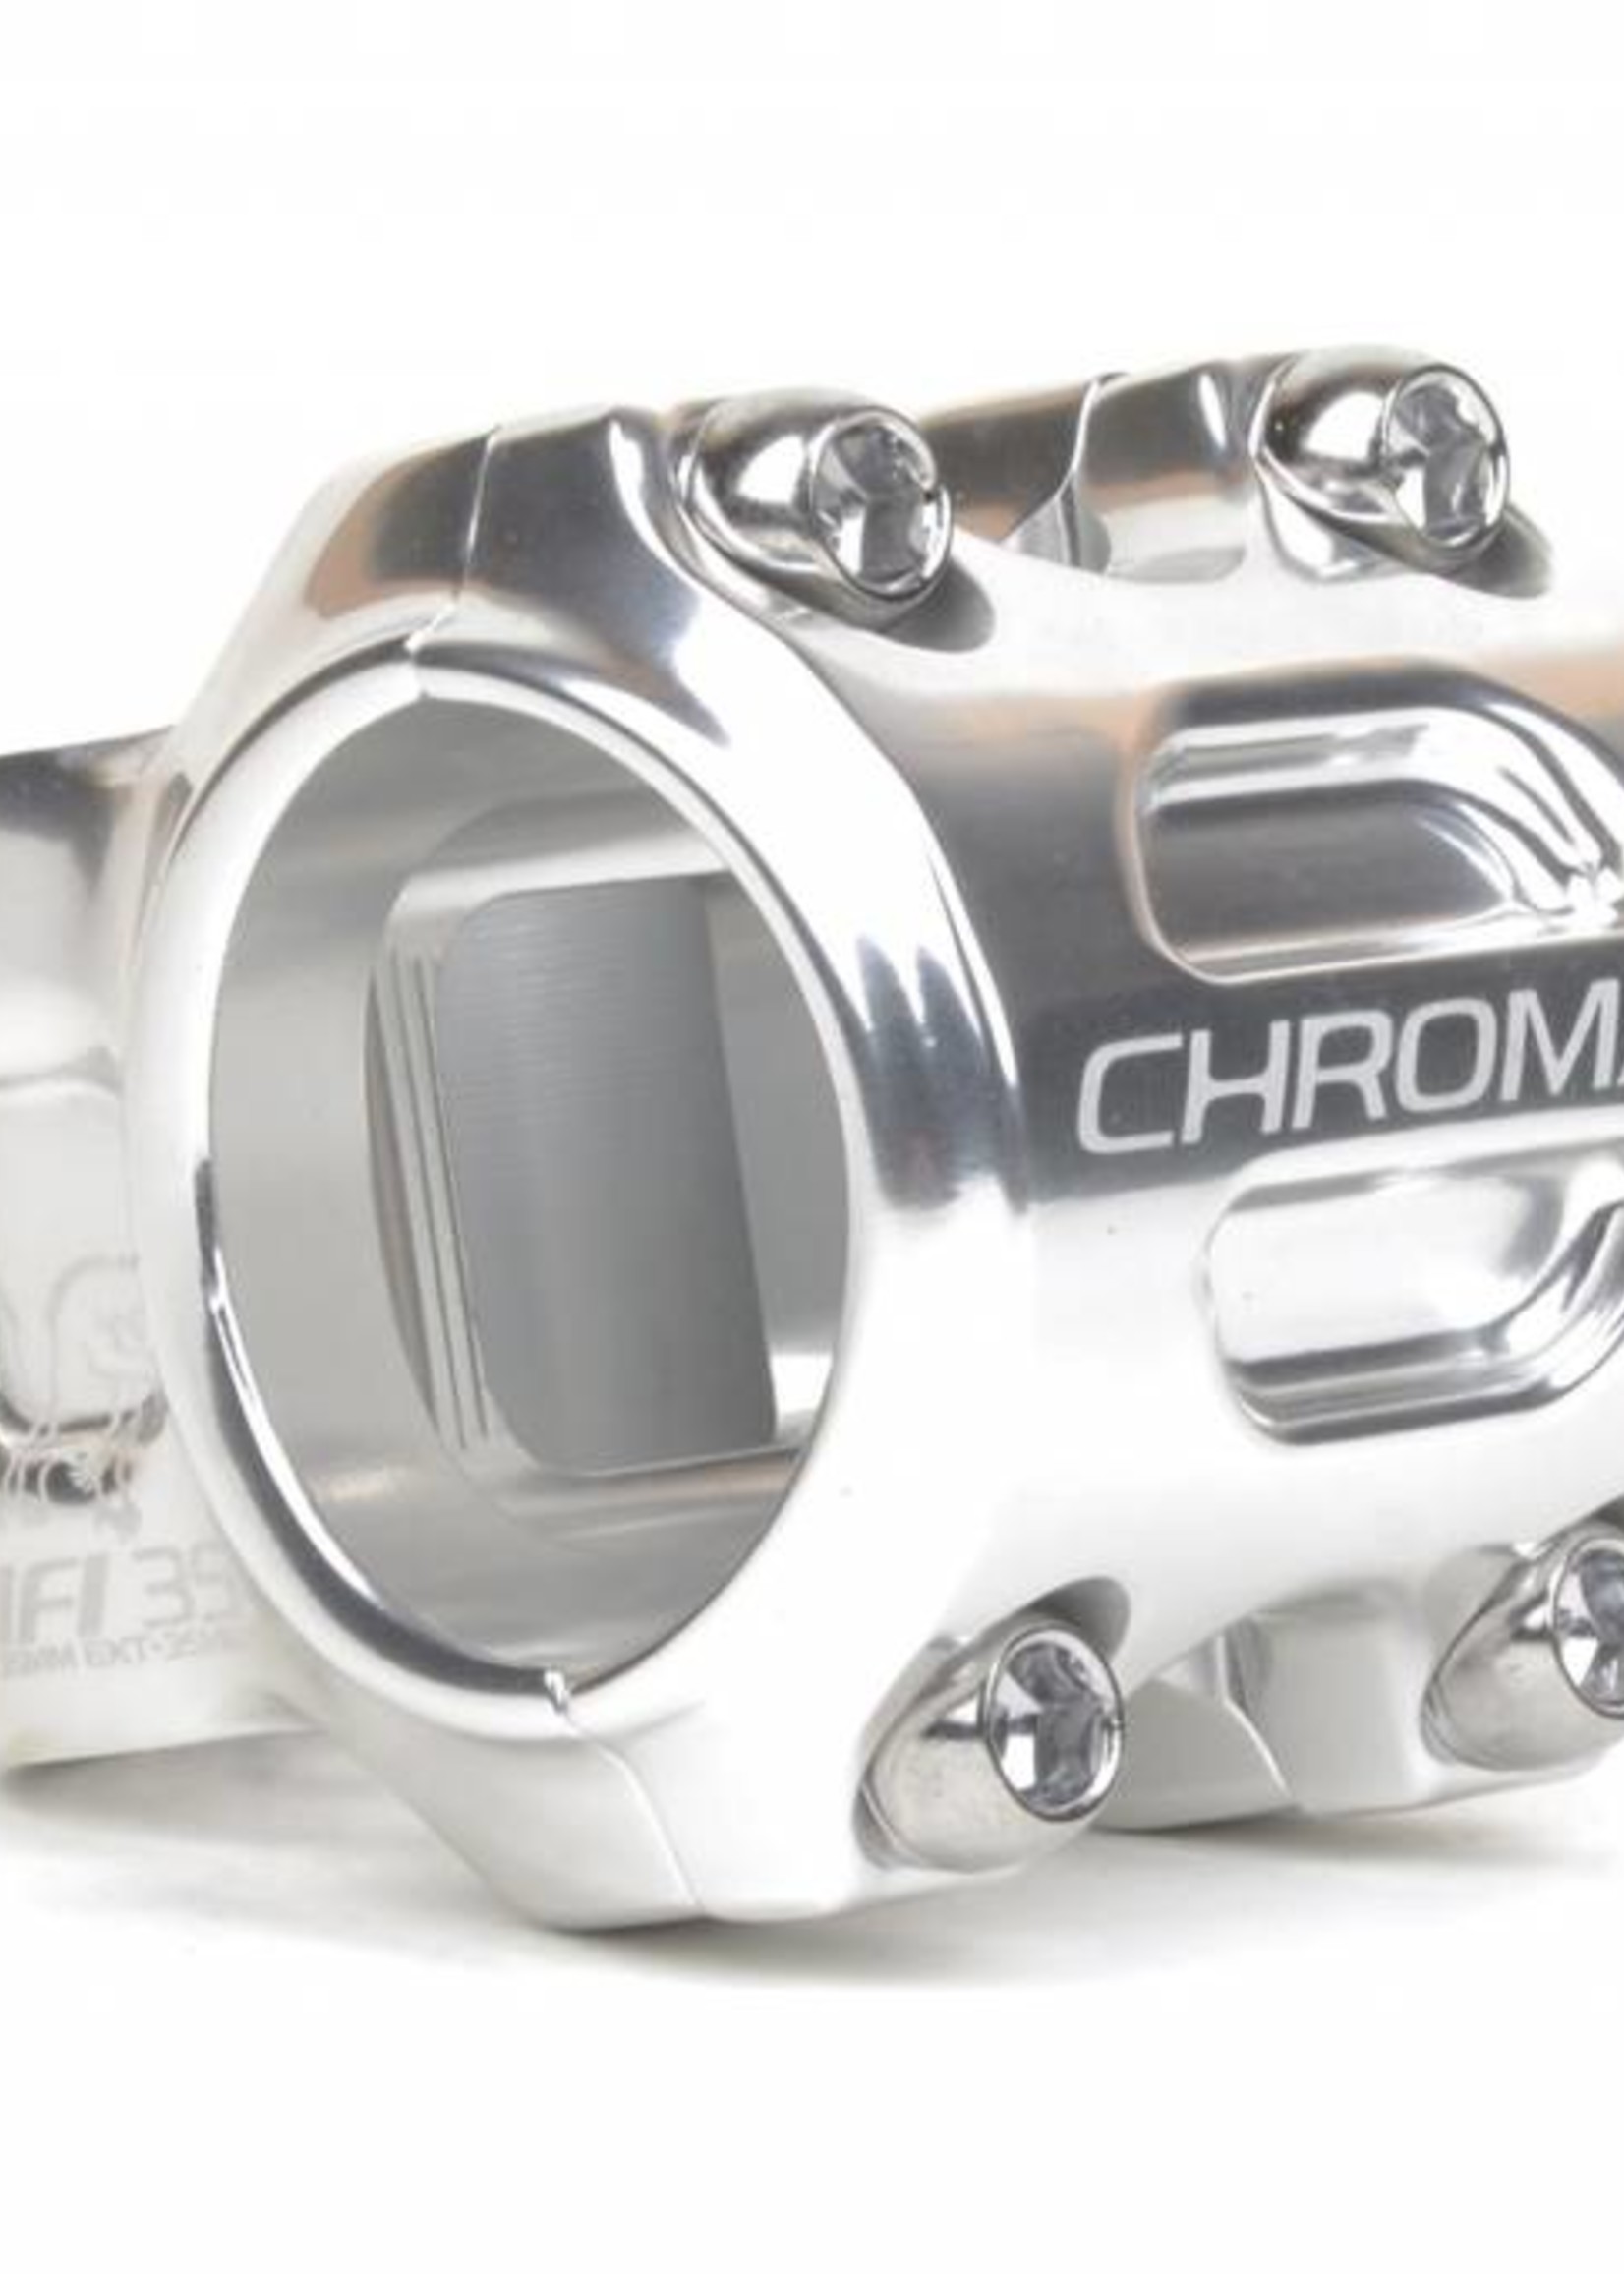 Chromag CHROMAG HIFI 35mm BAR CLAMP STEM